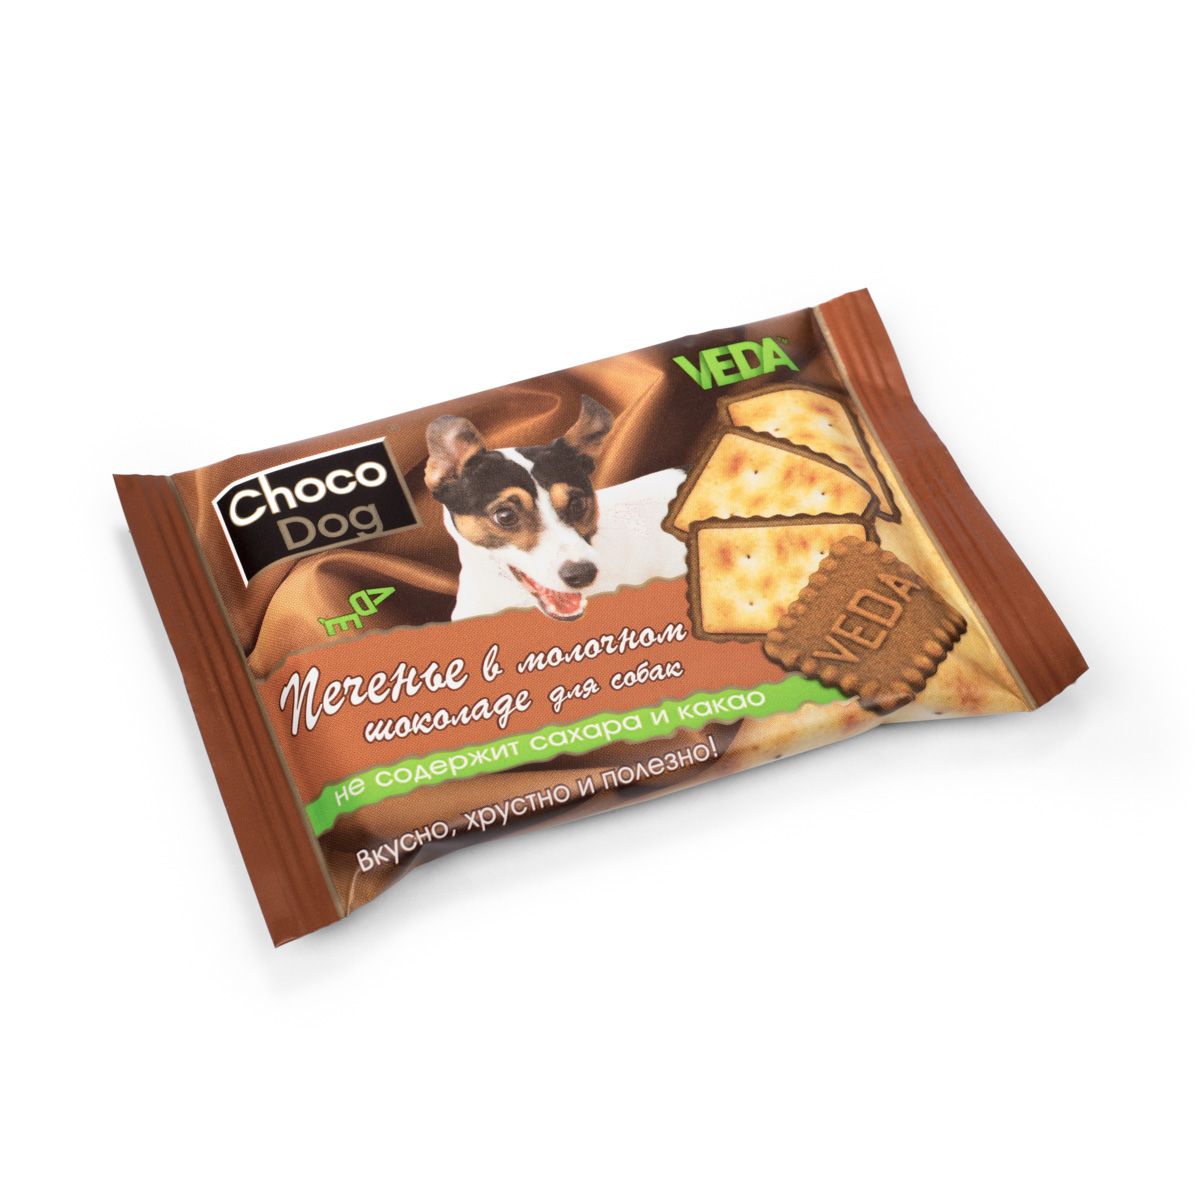 

Лакомство для собак VEDA Choco Dog, печенье в молочном шоколаде, 30г, оригинальная форма, шоколад, 30г